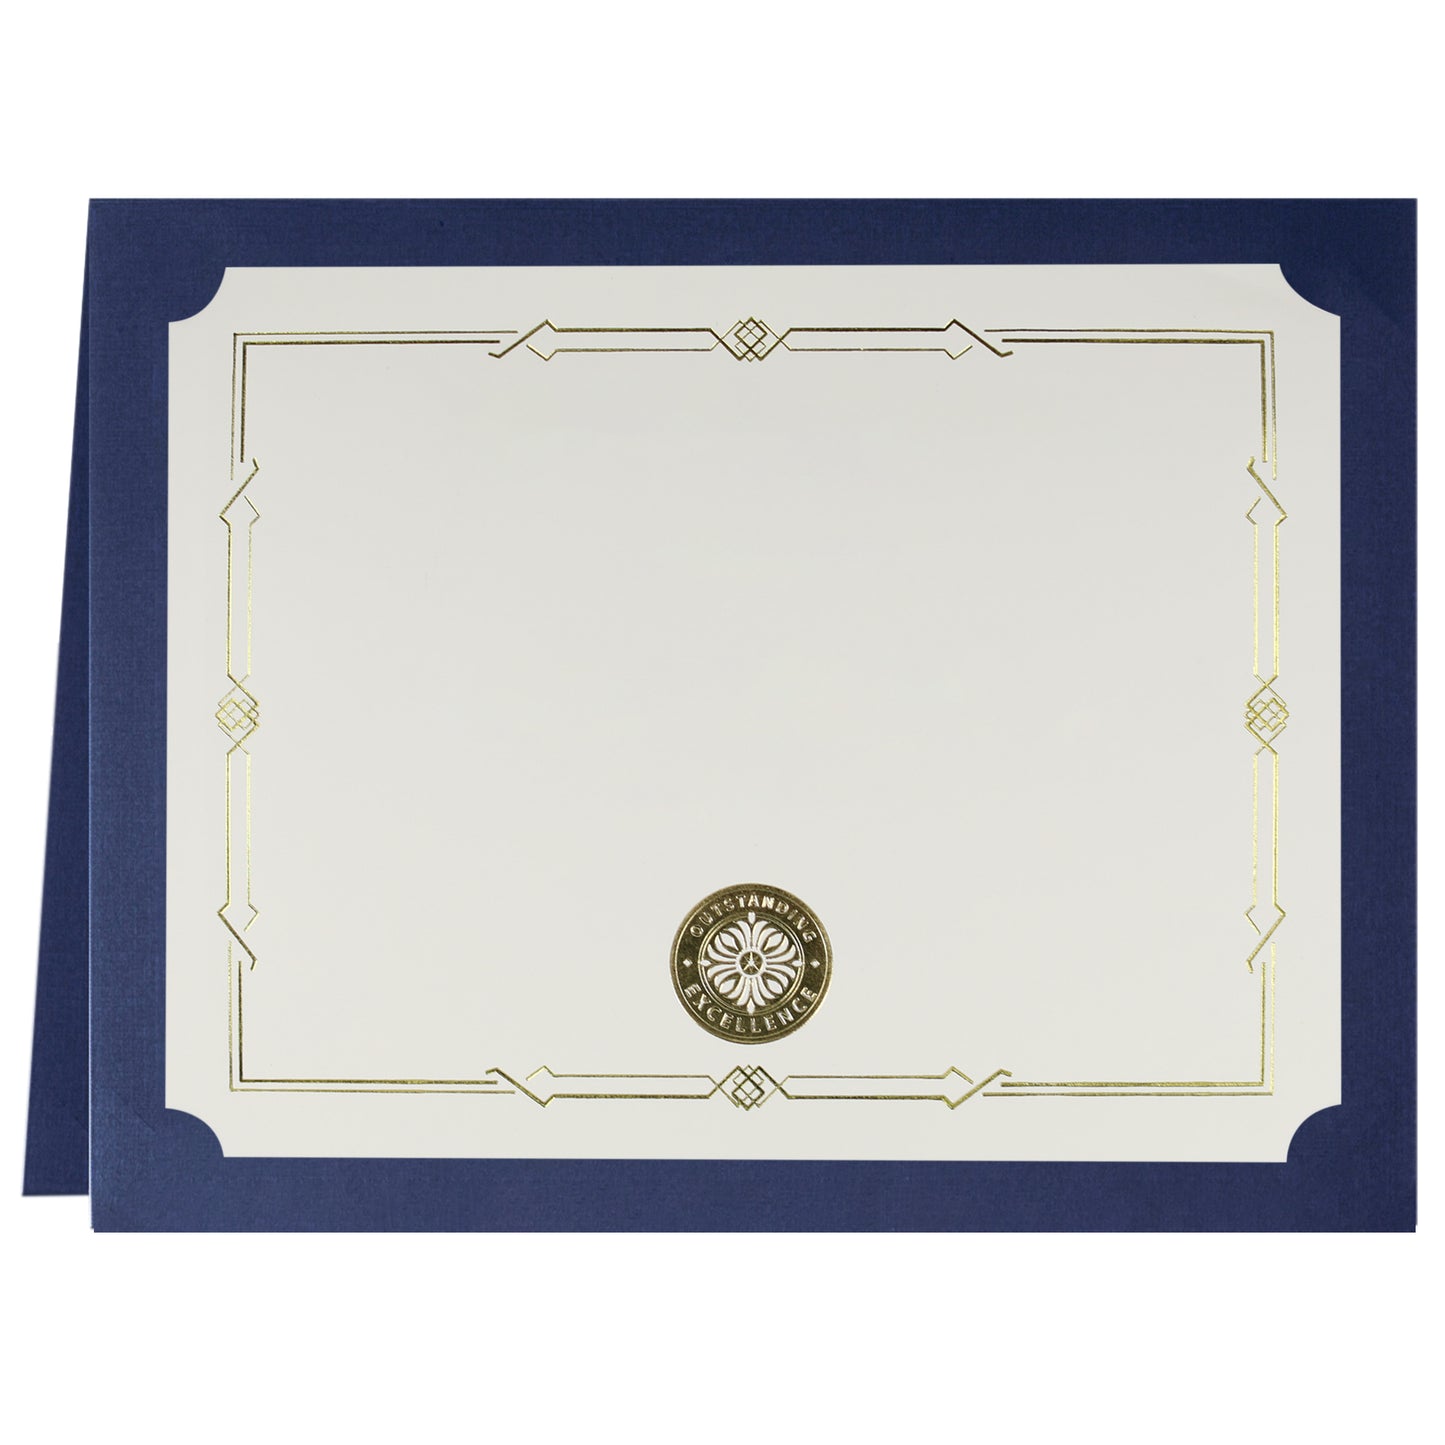 St. James® Porte-certificats/Couvertures de documents/Porte-diplômes, Bleu marine, Feuille d'or, Finition lin, Paquet de 5, 83809